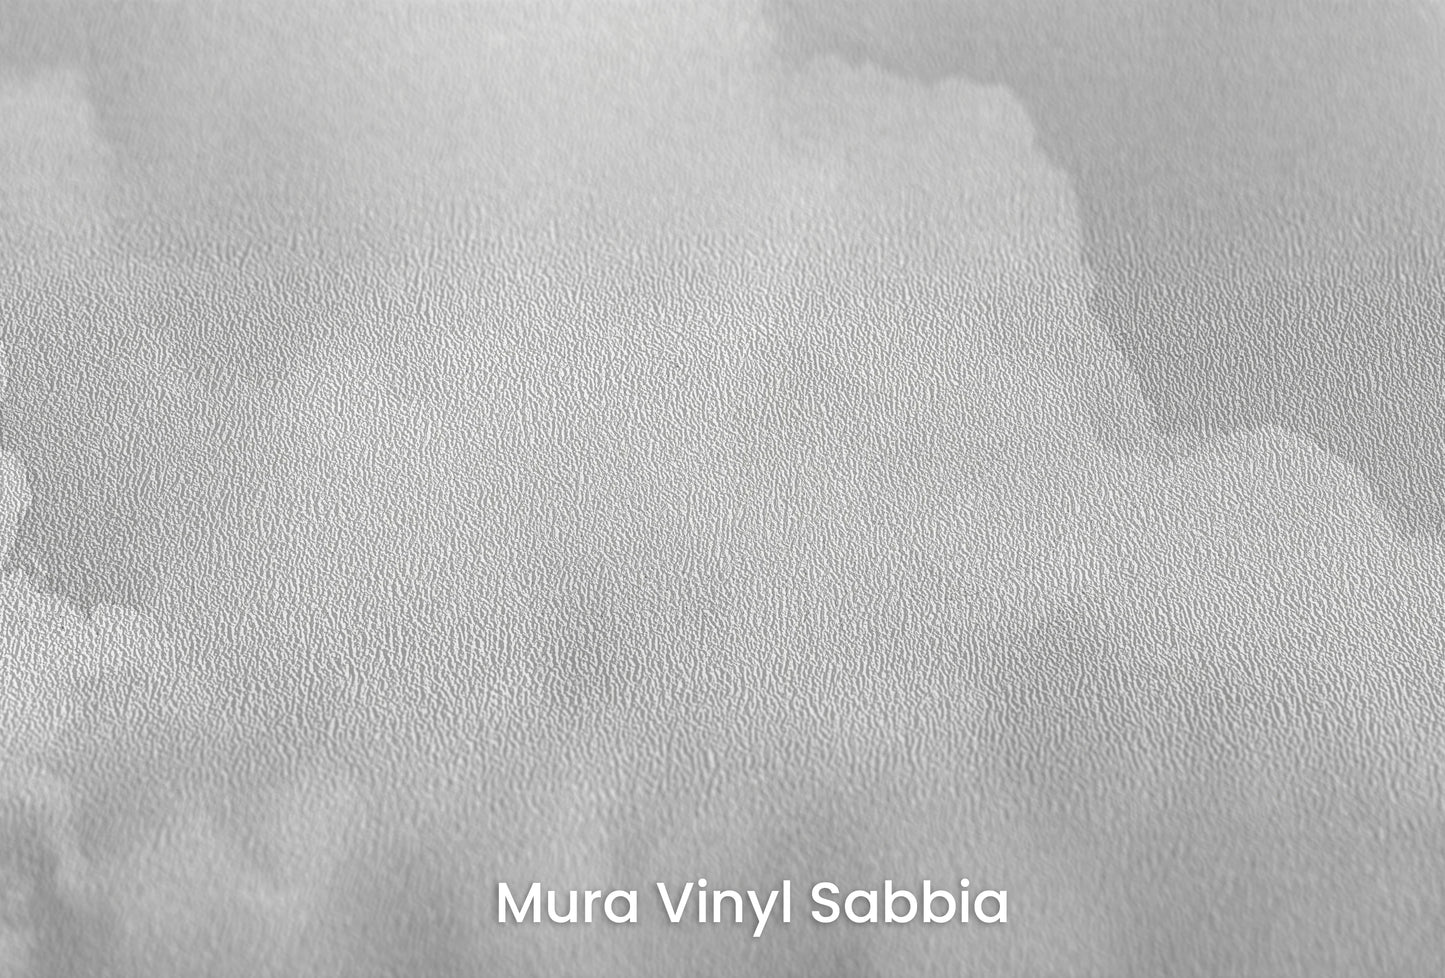 Zbliżenie na artystyczną fototapetę o nazwie Clouds of Tranquility na podłożu Mura Vinyl Sabbia struktura grubego ziarna piasku.